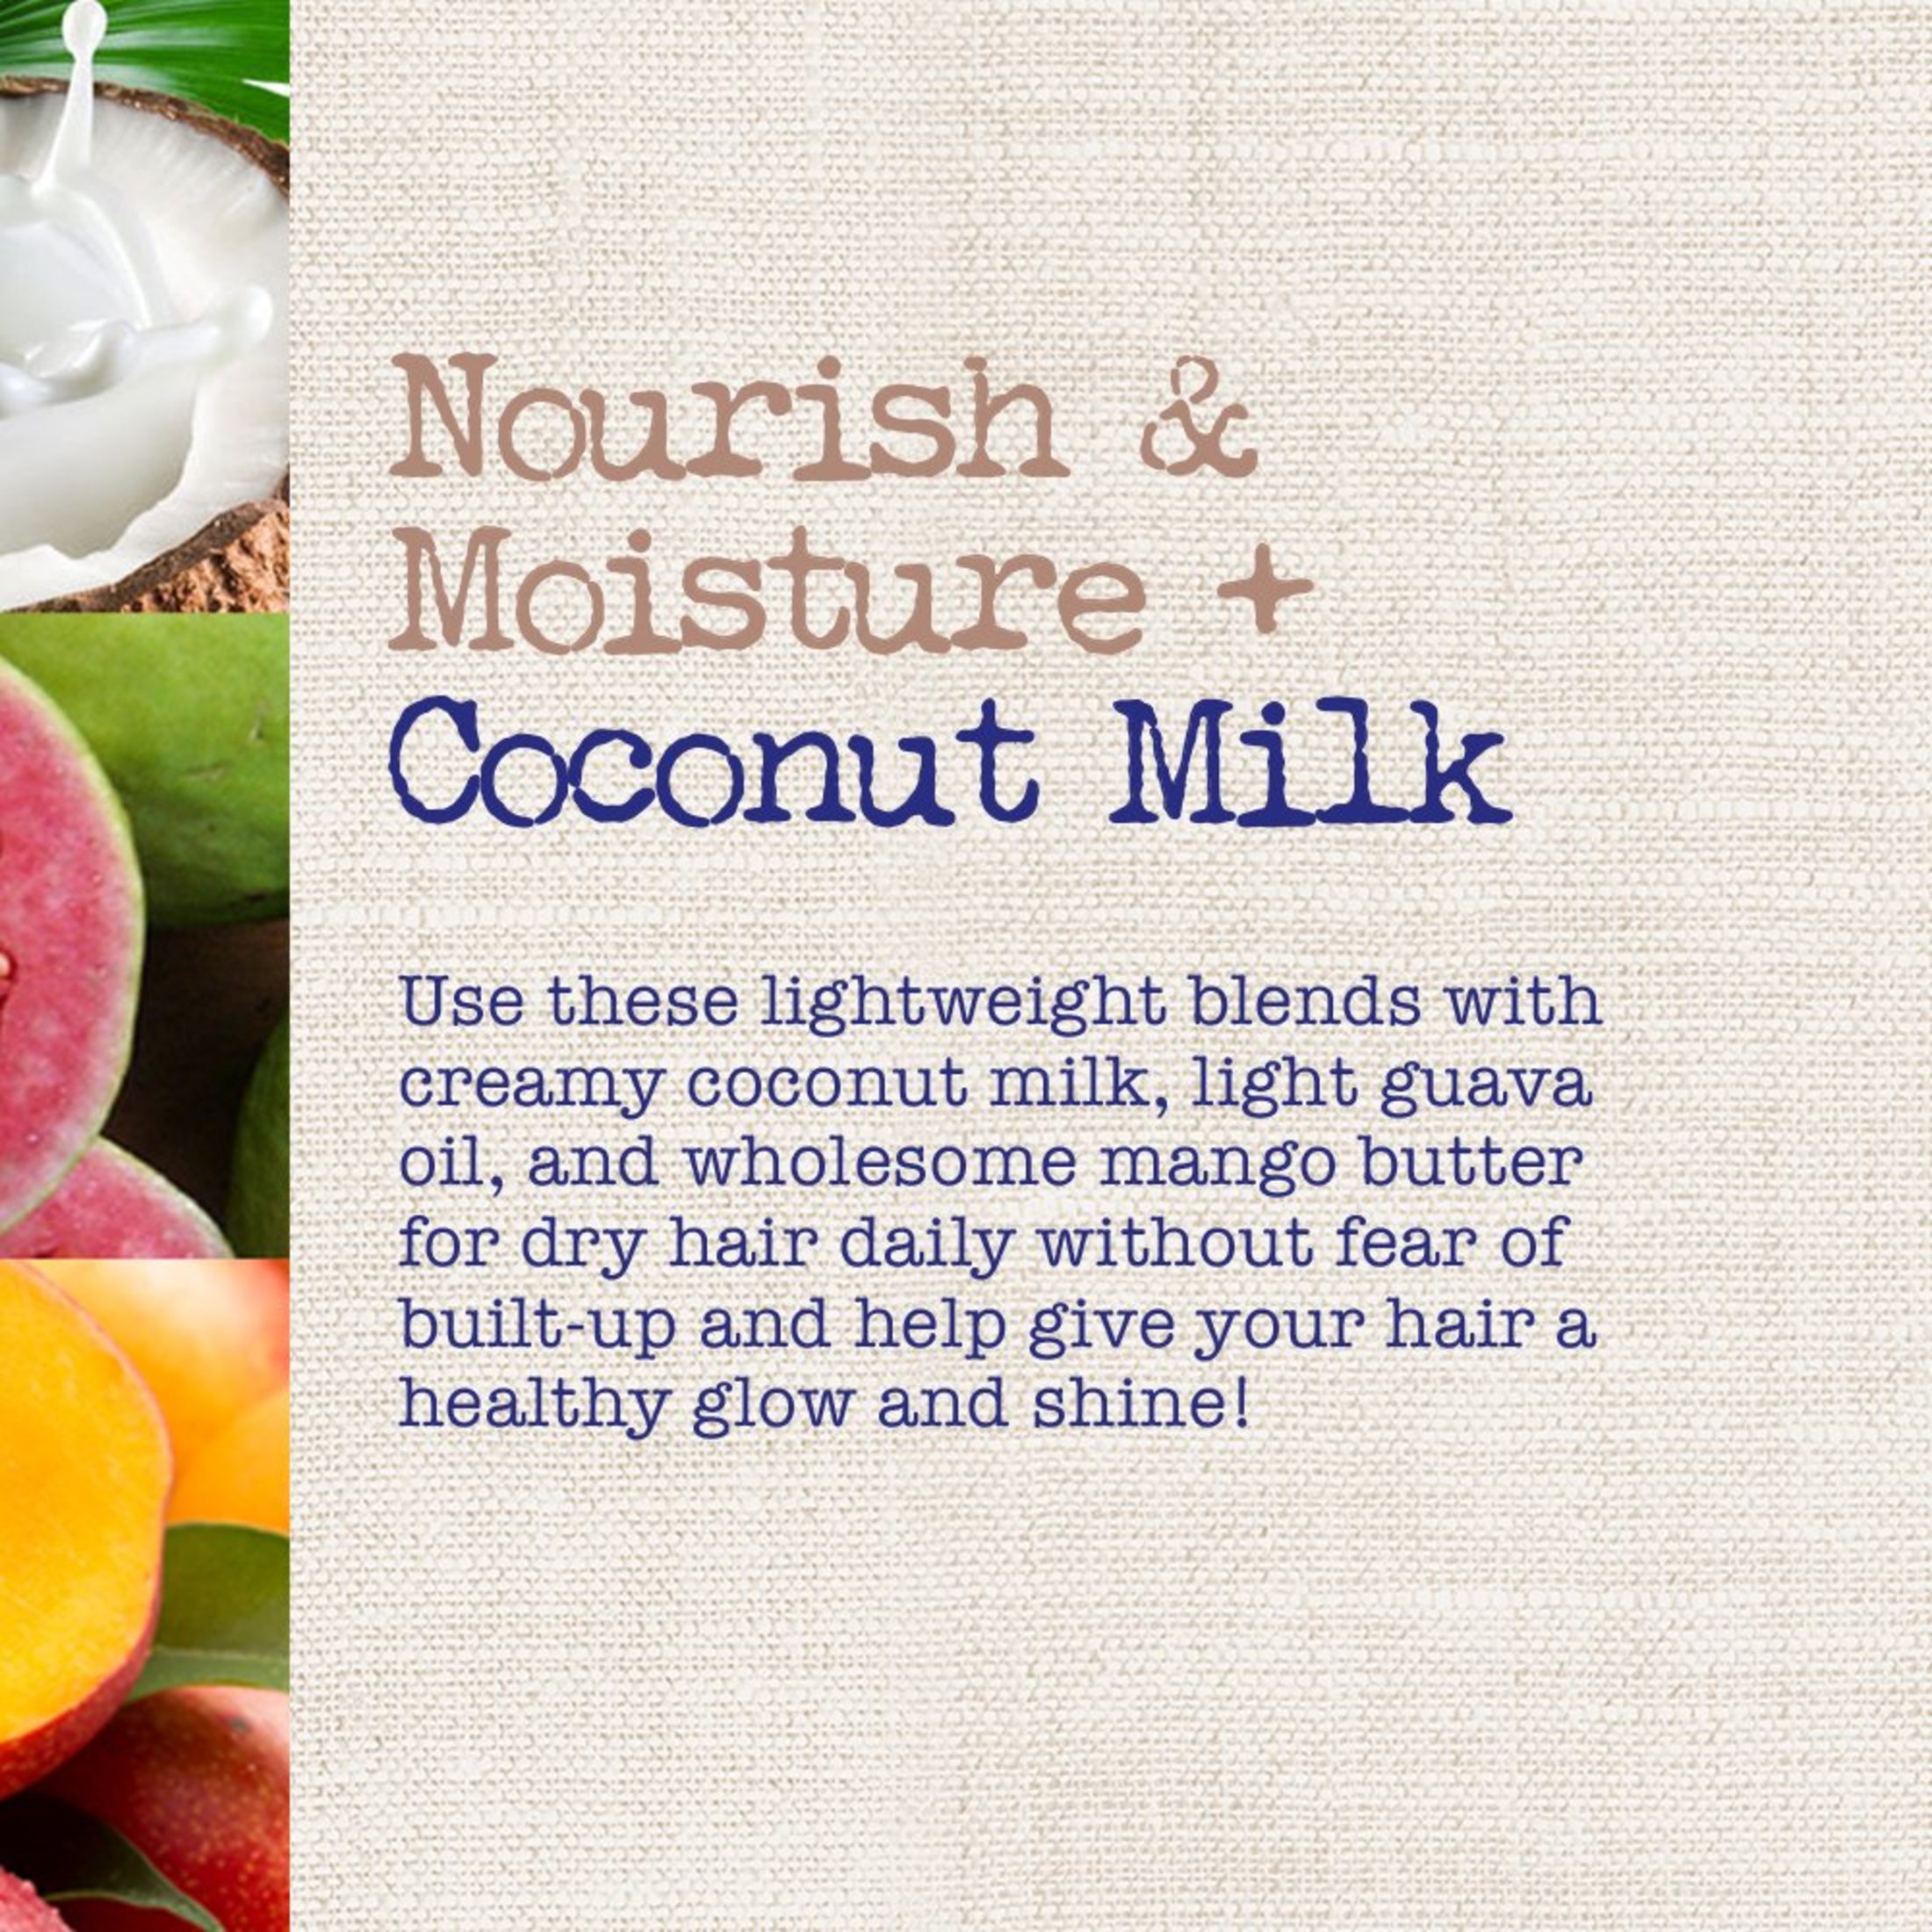 Nourish & Moisture + Coconut Milk Conditioner - image 5 of 7